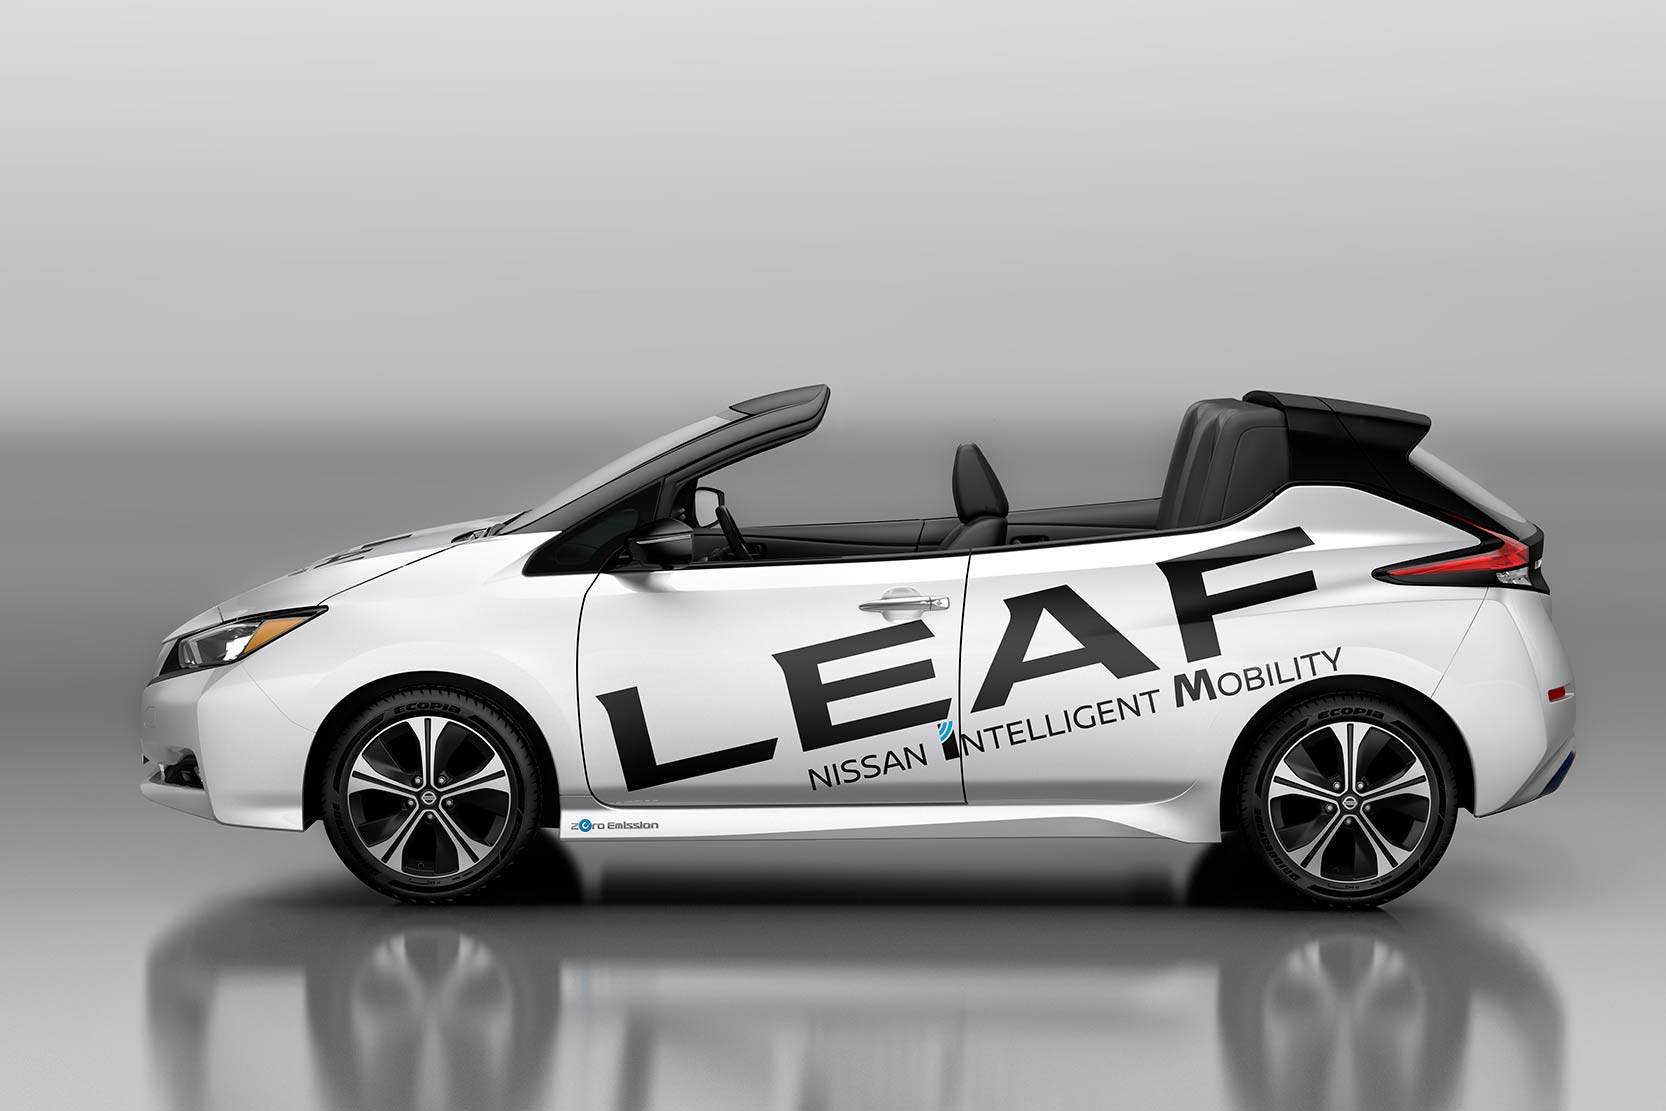 Image principale de l'actu: Nissan leaf cabriolet une belle celebration 